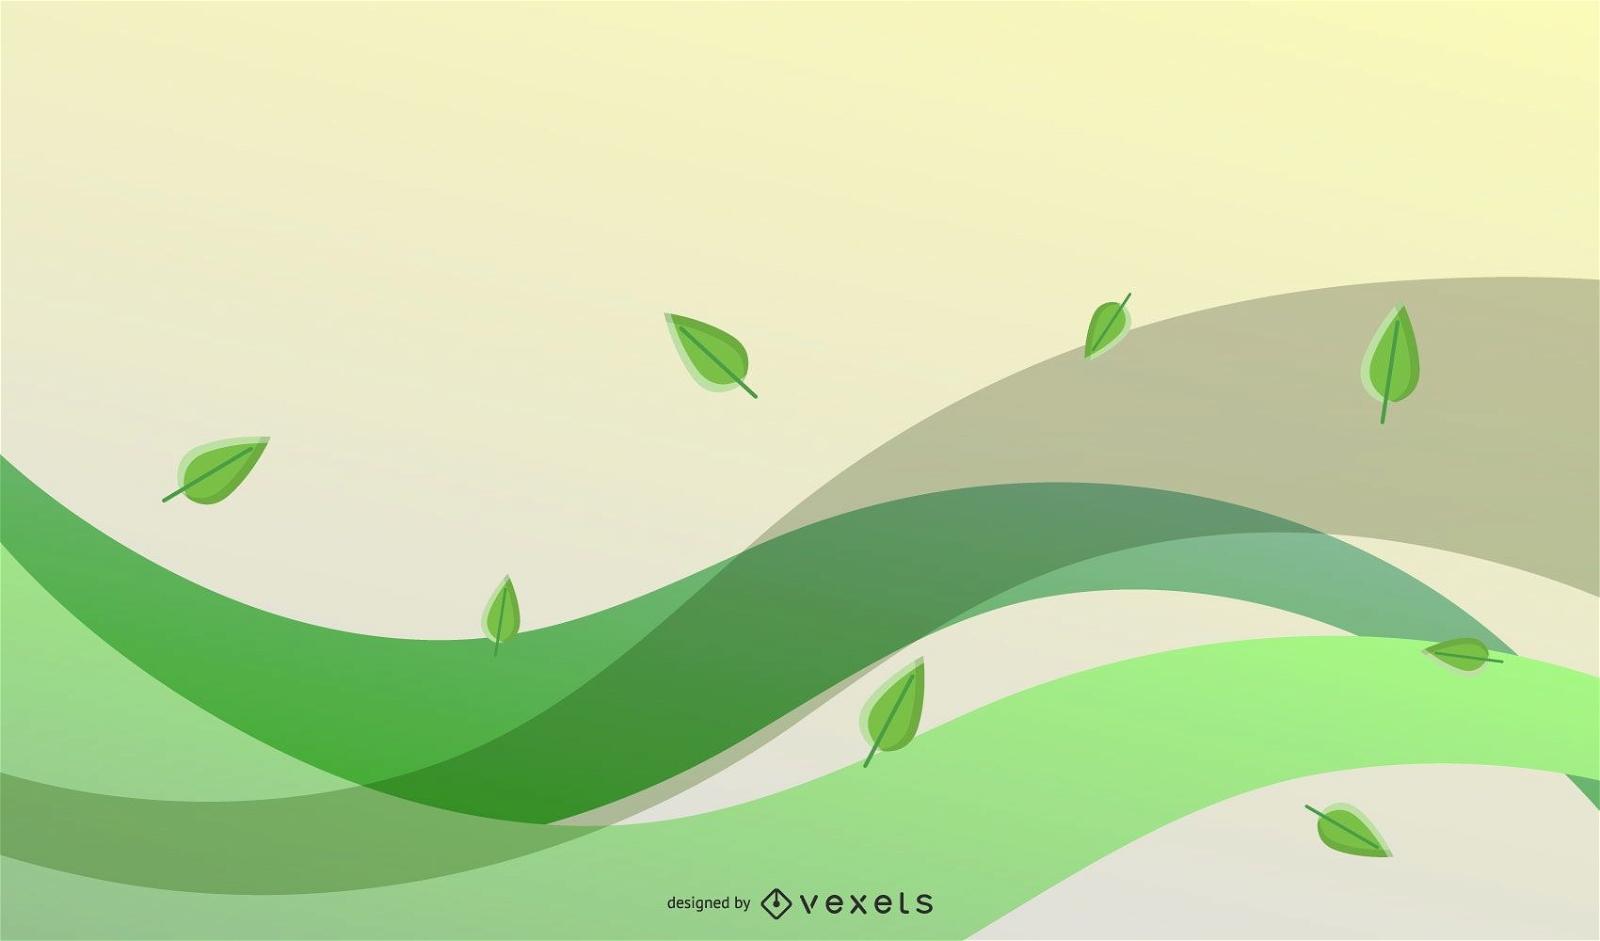 Vektor-Öko-Blätter und grüne Welle